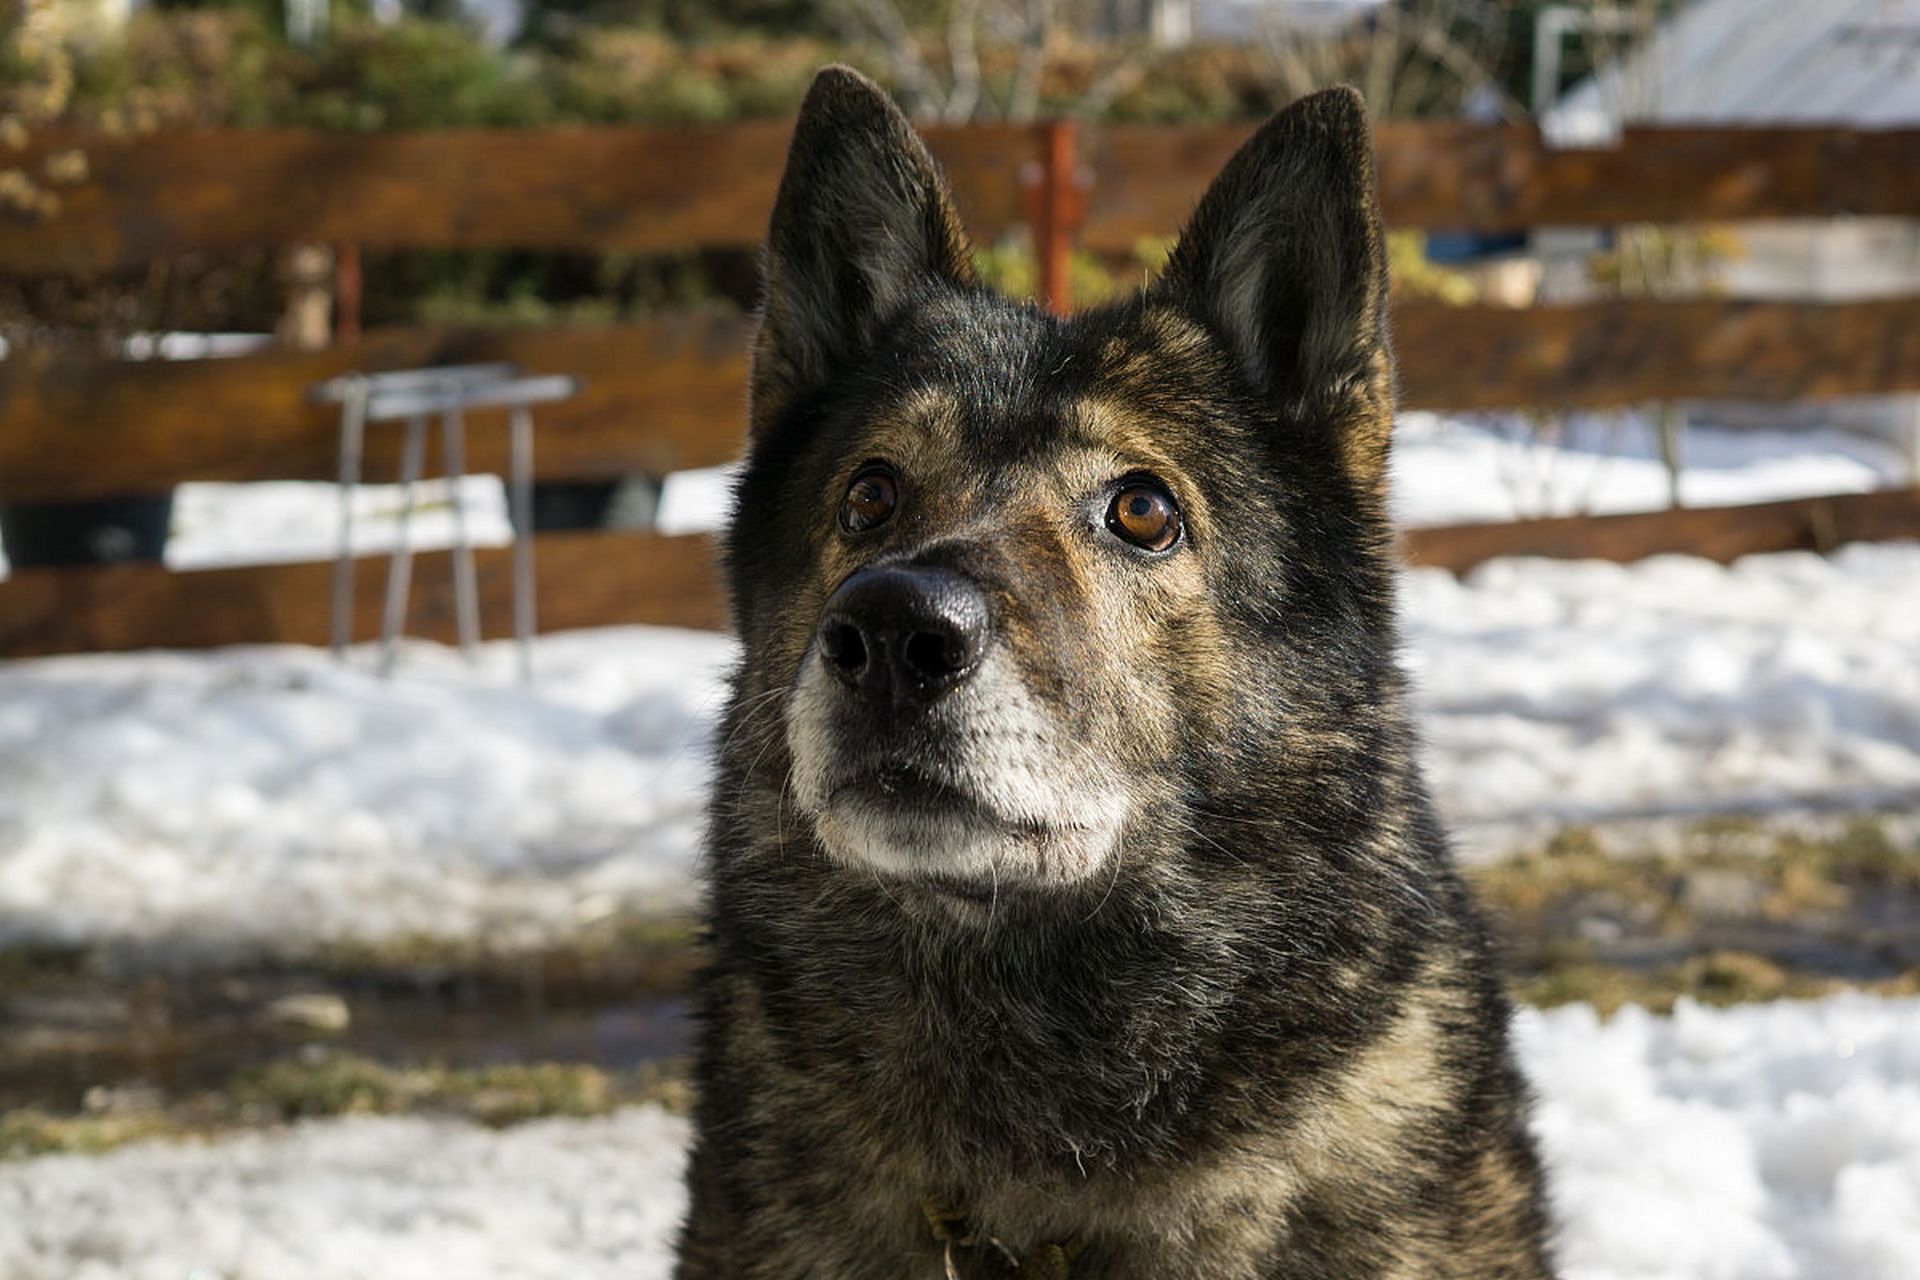 捷克狼犬是具有强大身体素质和敏锐感知能力的犬种,常用于护卫,搜救等